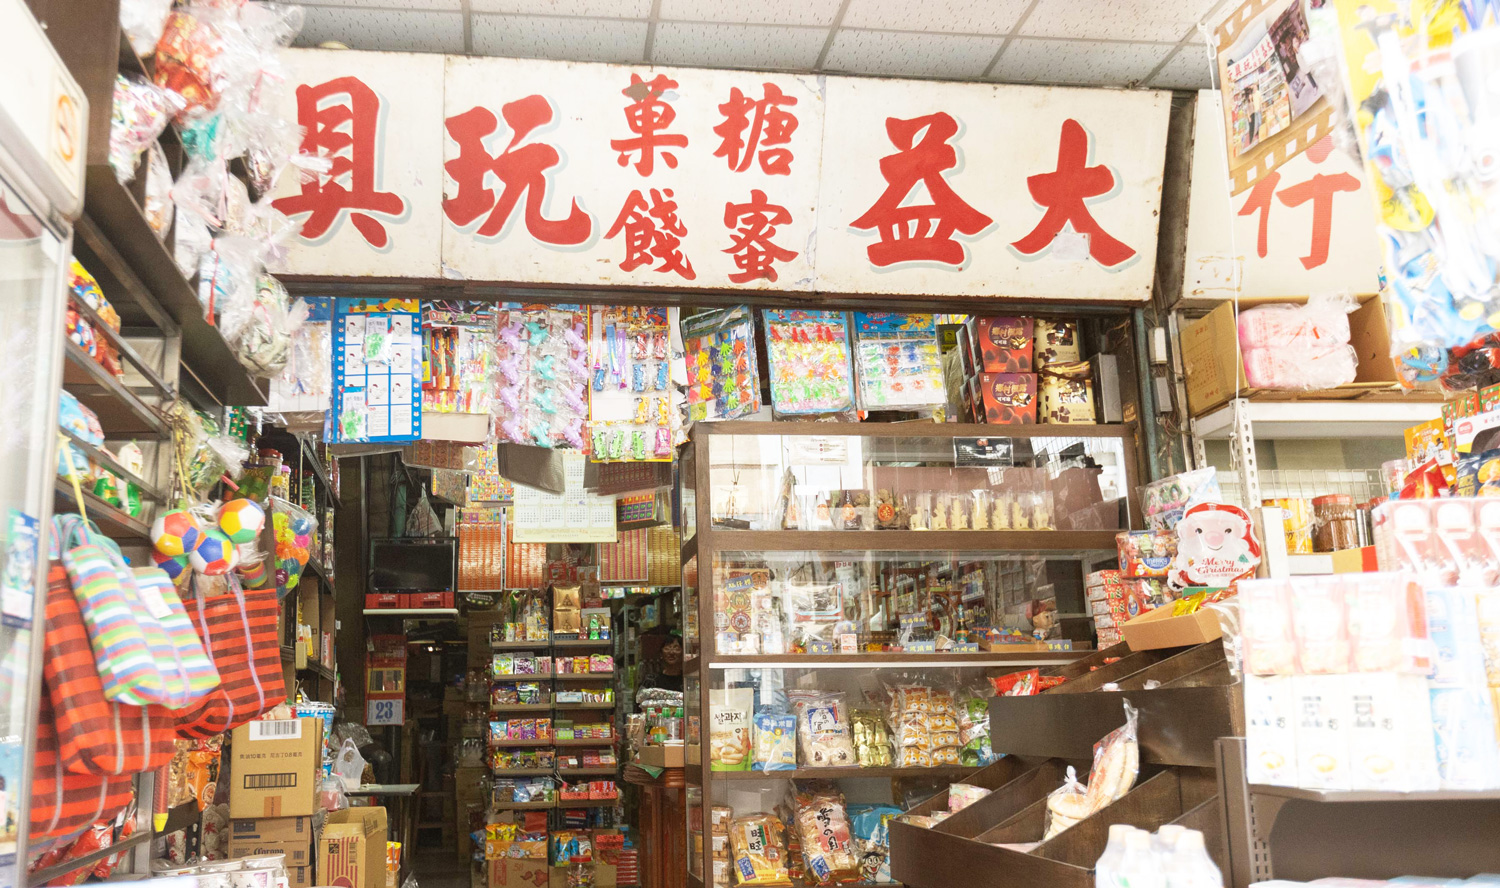 經營近半世紀的大益糖菓店（中）曾被畫家陳澄波畫入畫中。（圖片來源：嘉義異鄉人提供）